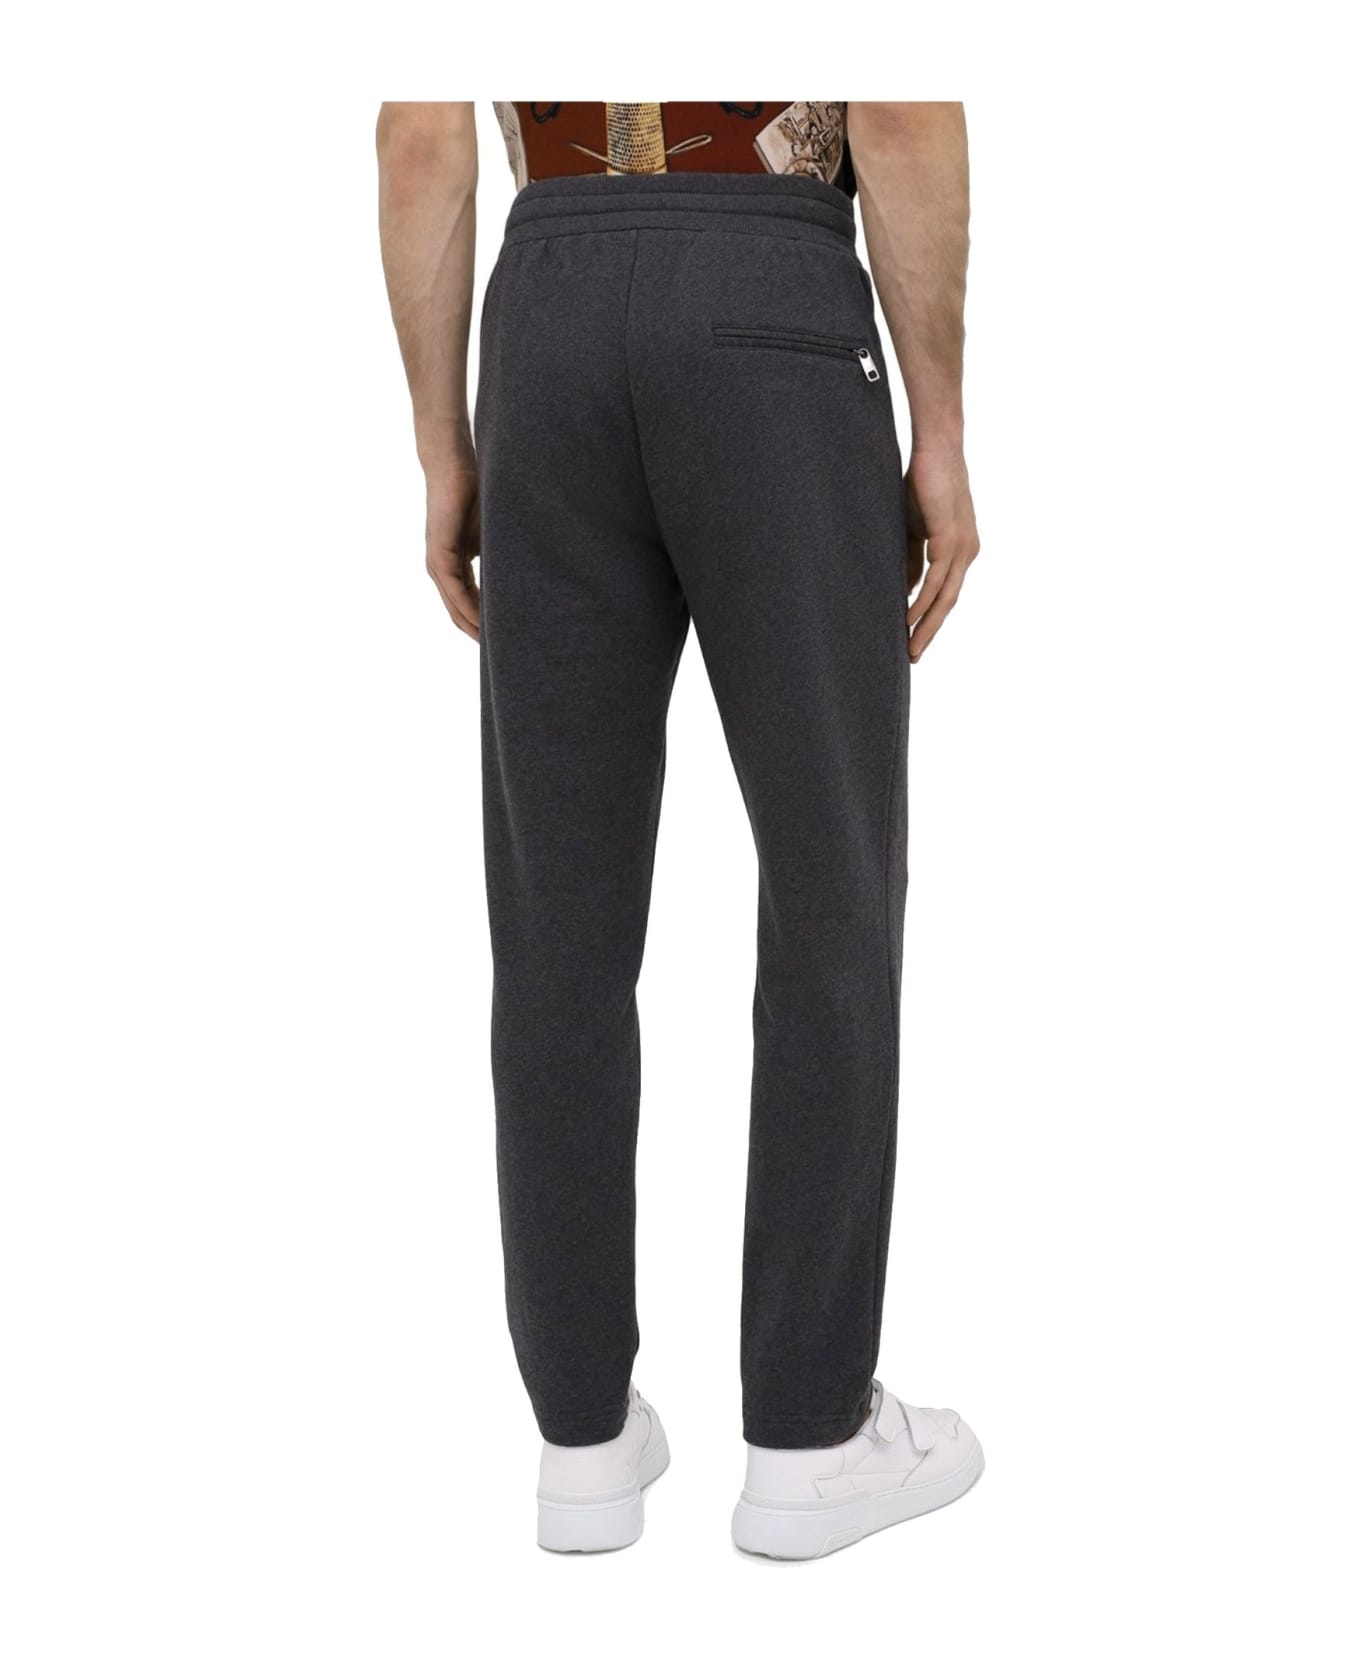 Dolce & Gabbana Cotton Jogging Pants - Gray